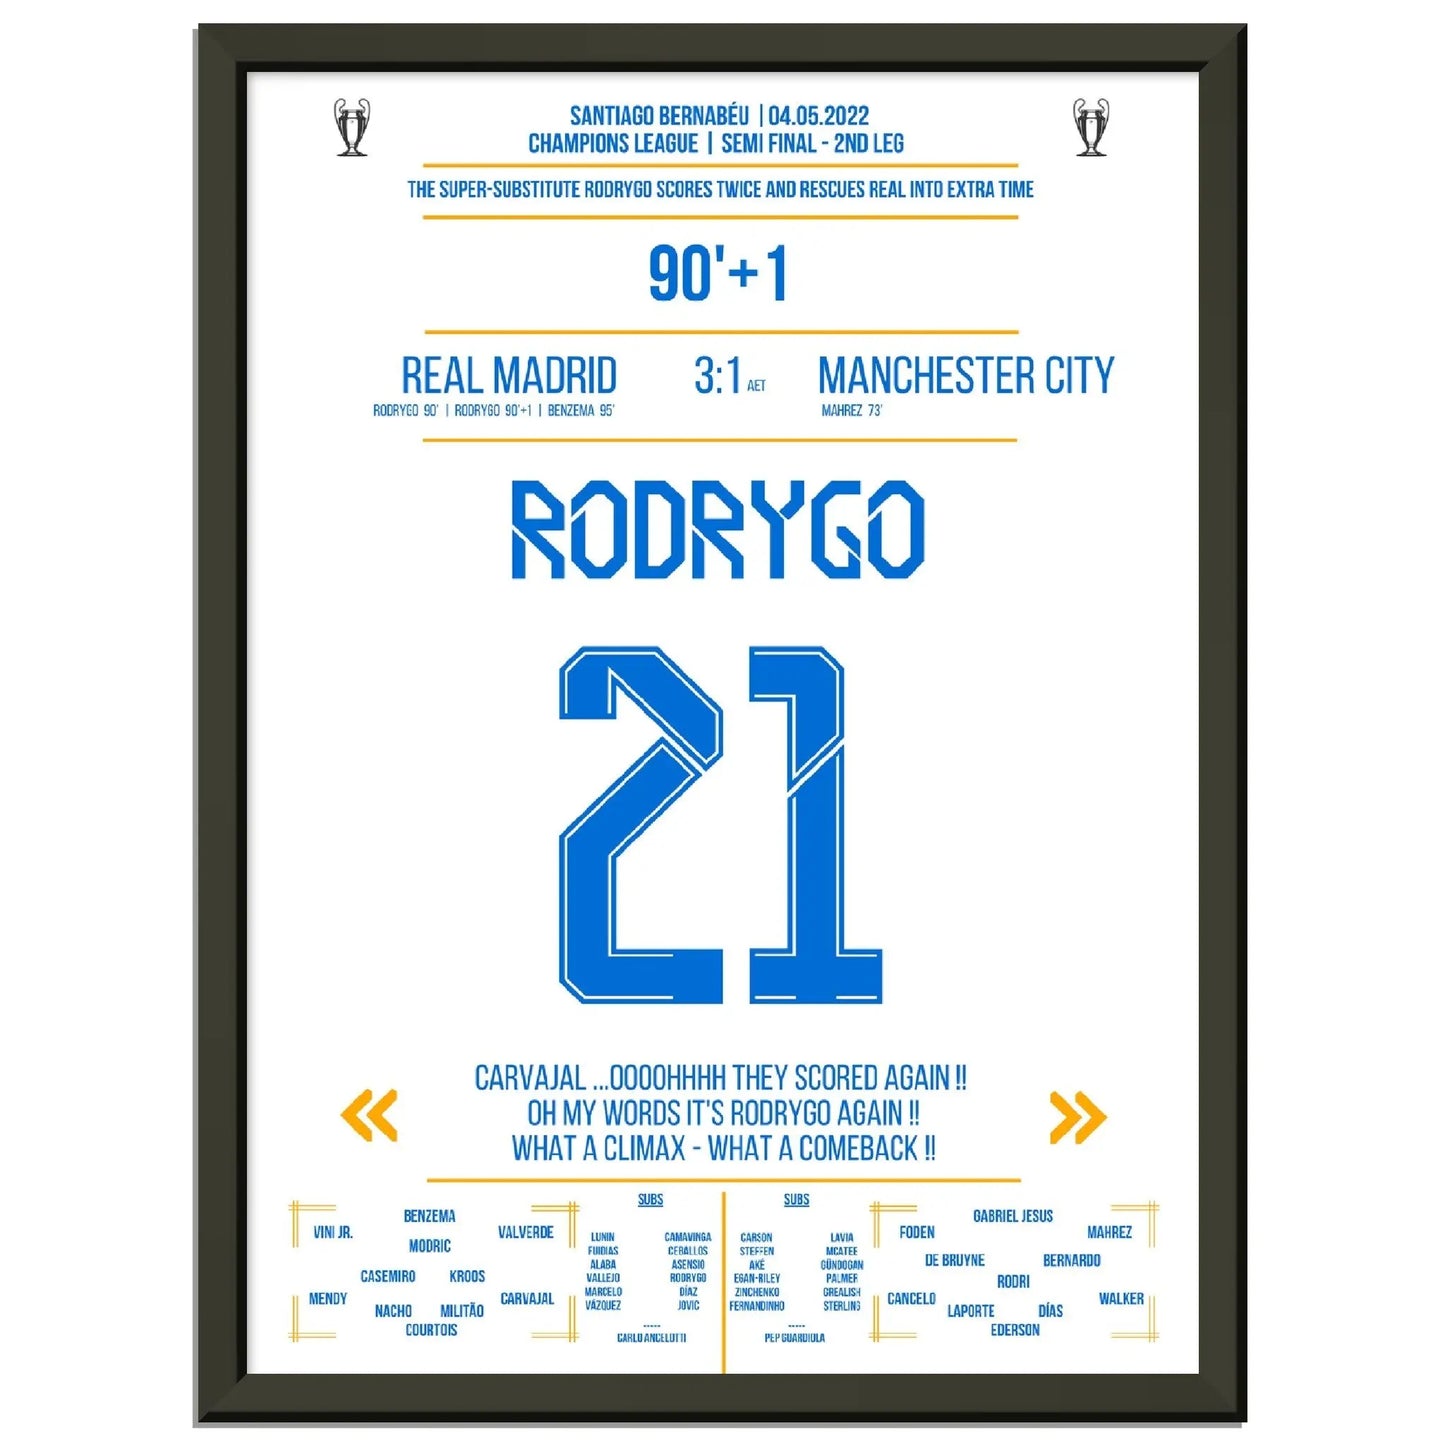 Rodrygo rettet Real in die Verlängerung auf dem Weg ins Champions League Finale 2022 